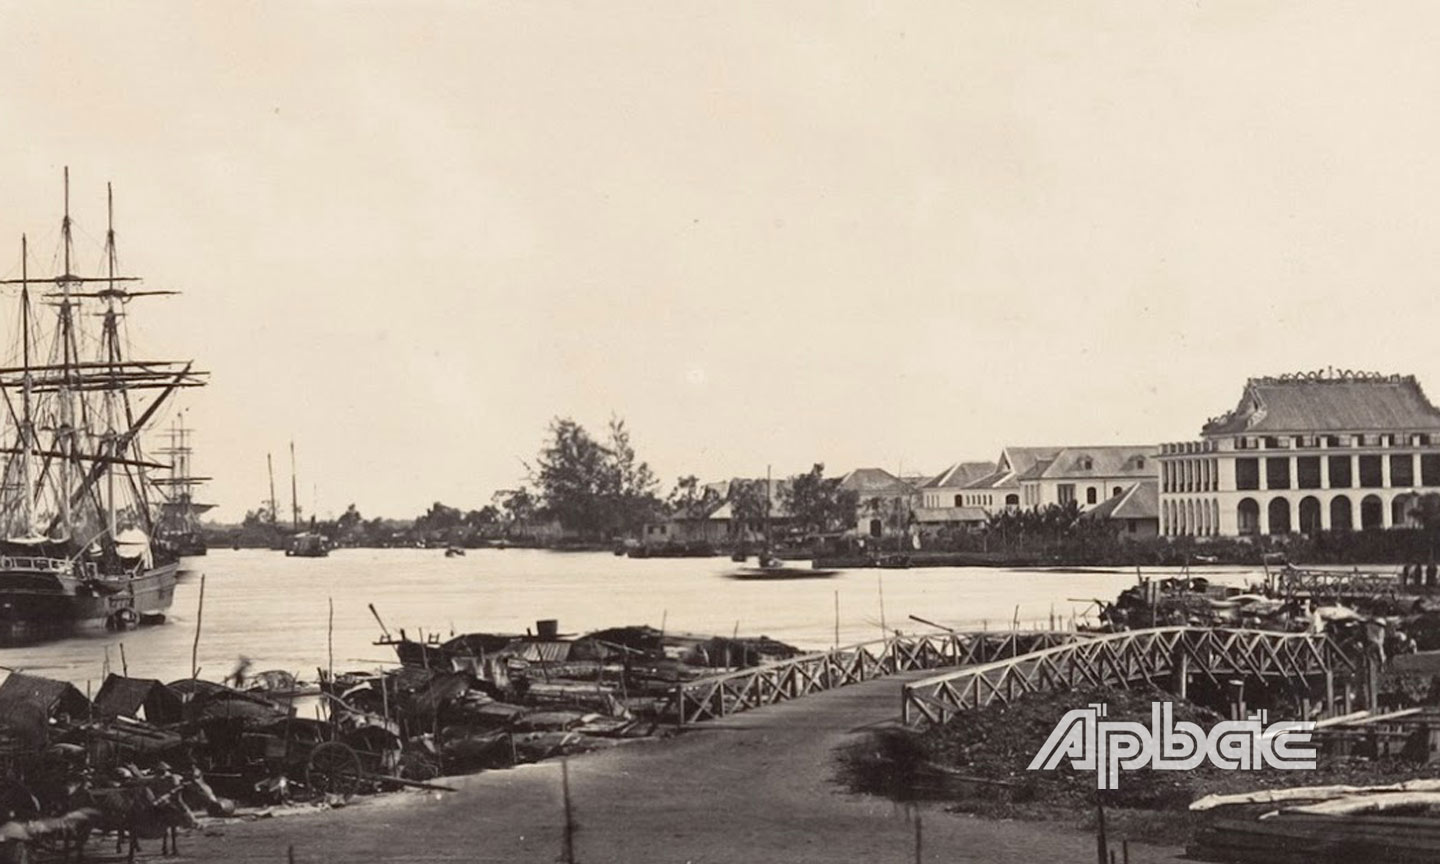 Ngày 5-6-1911, tại Bến cảng Nhà Rồng, Nguyễn Tất Thành đã rời Tổ quốc để thực hiện hoài bão giải phóng nước nhà khỏi ách nô lệ của thực dân, đế quốc.                                                          Ảnh:  Tư liệu TTXVN